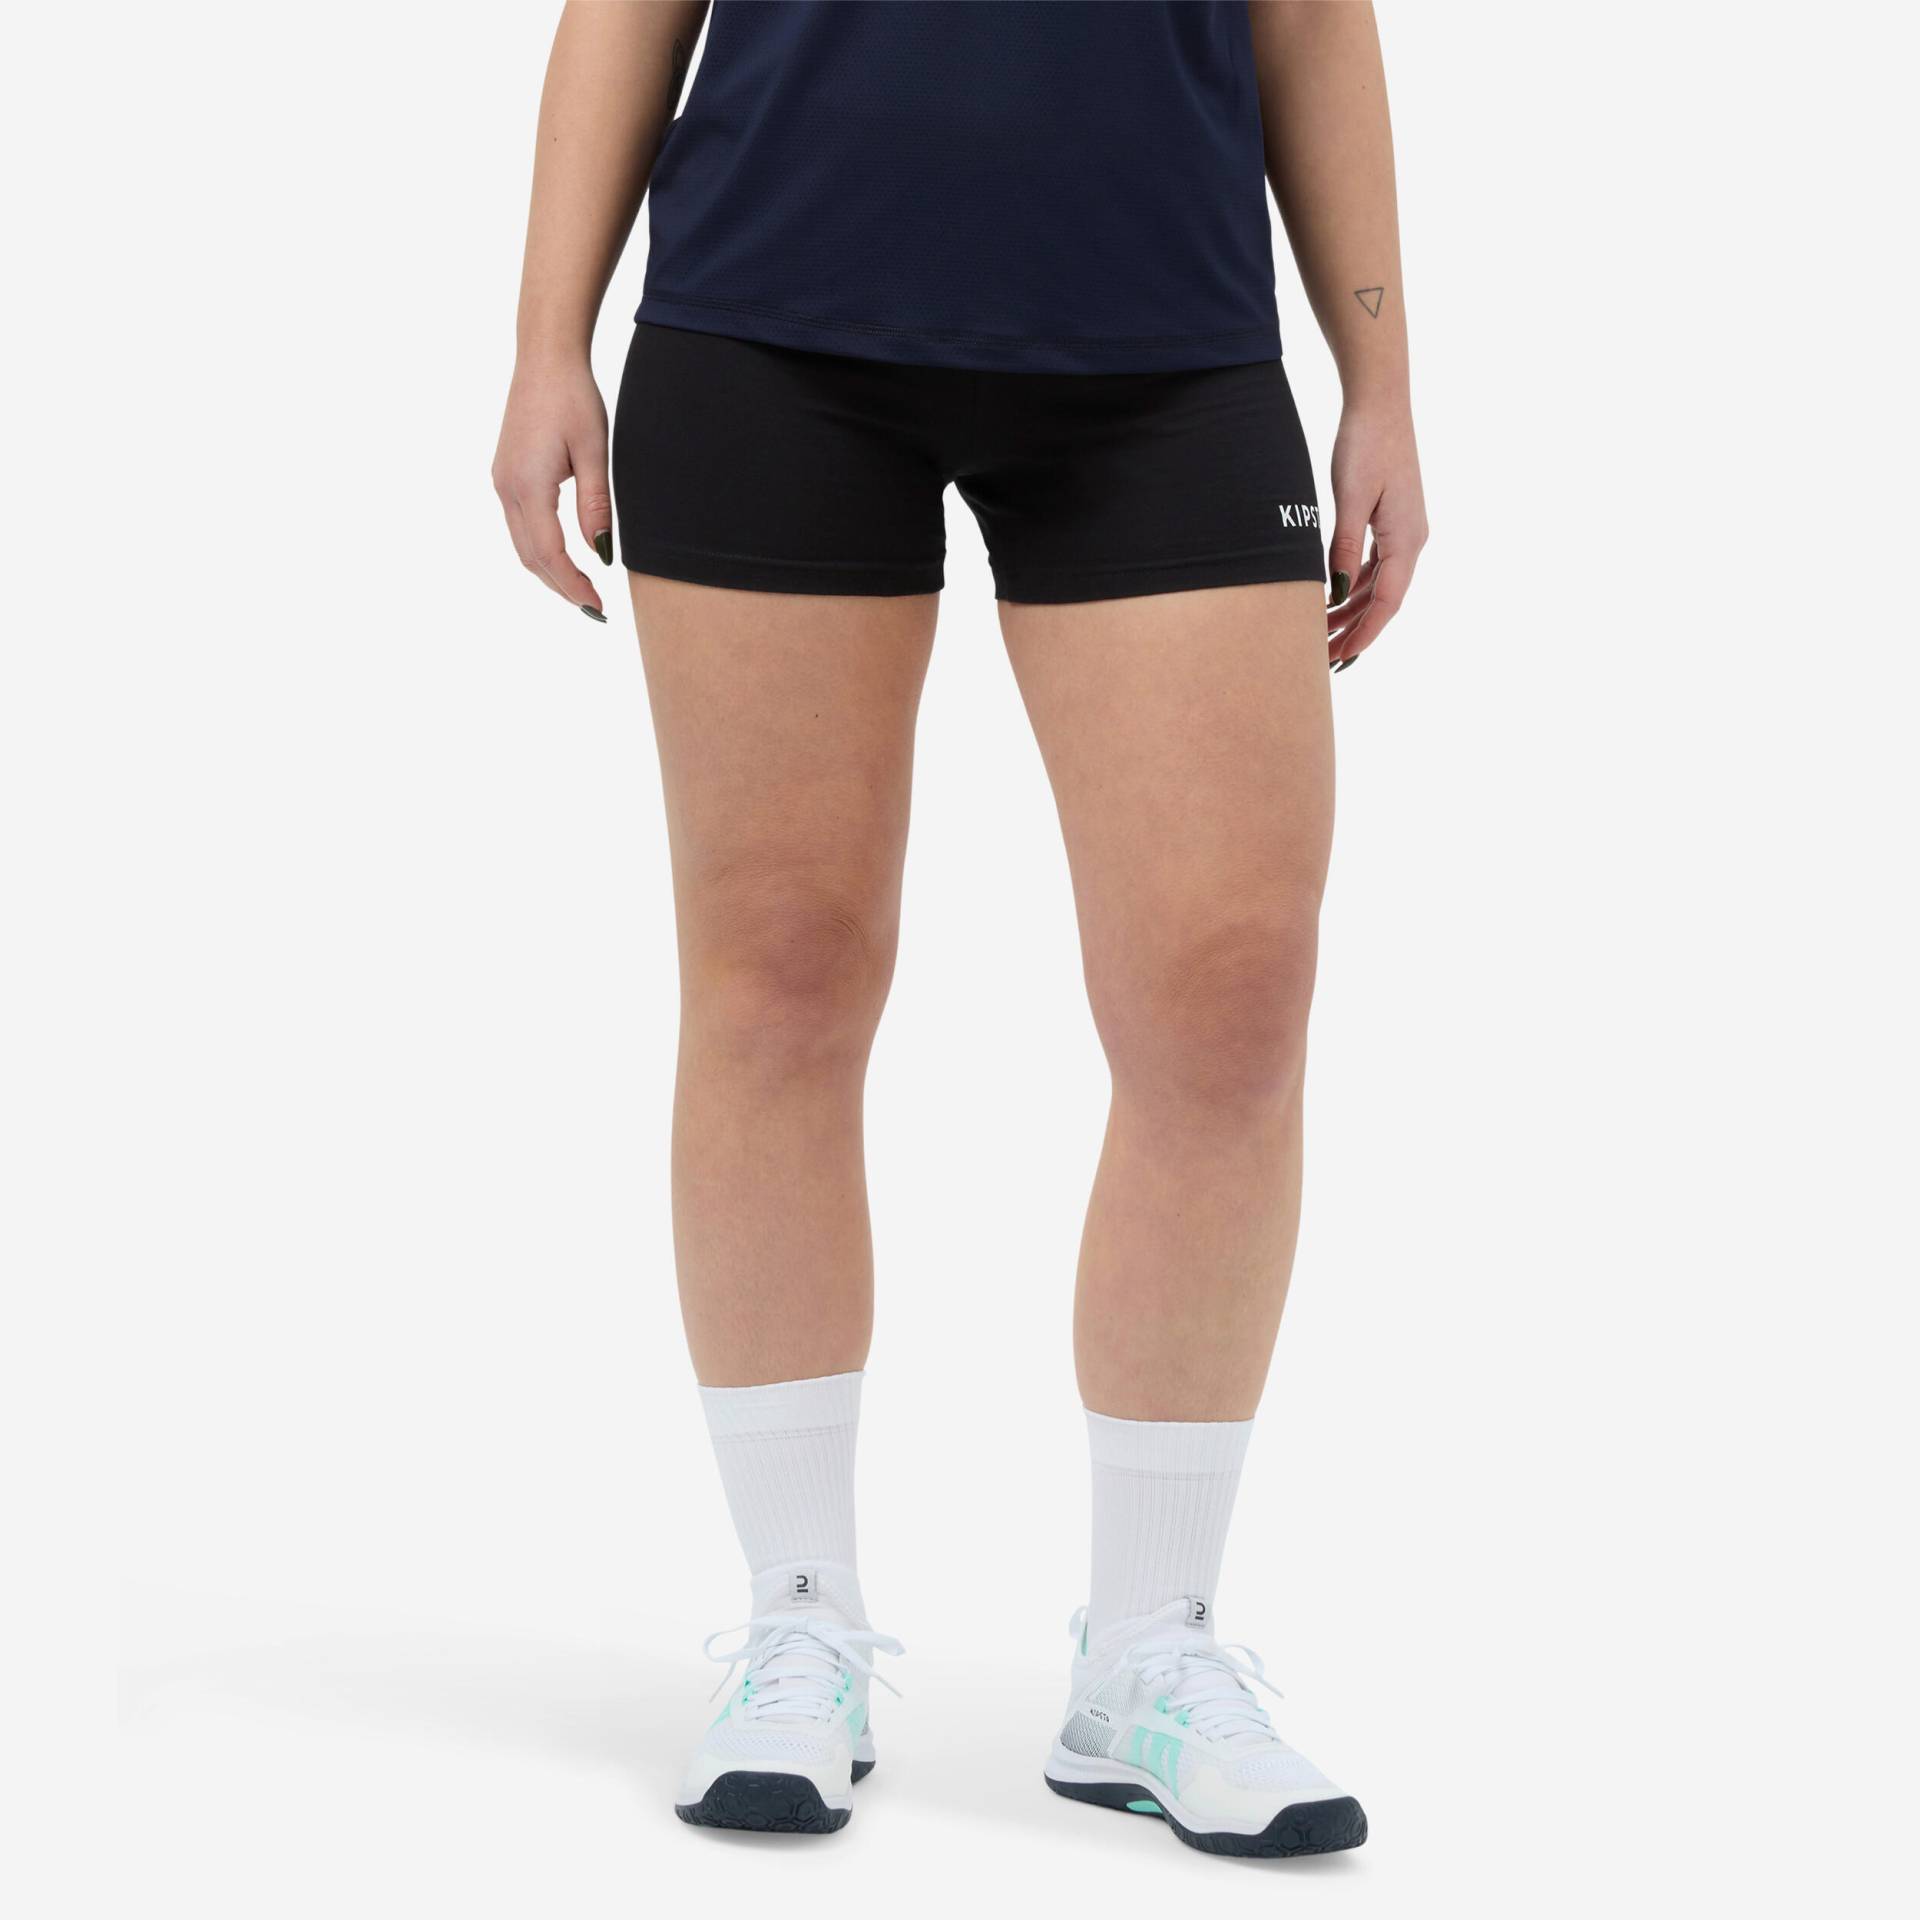 Damen Volleyball Shorts - VSH100 schwarz von ALLSIX